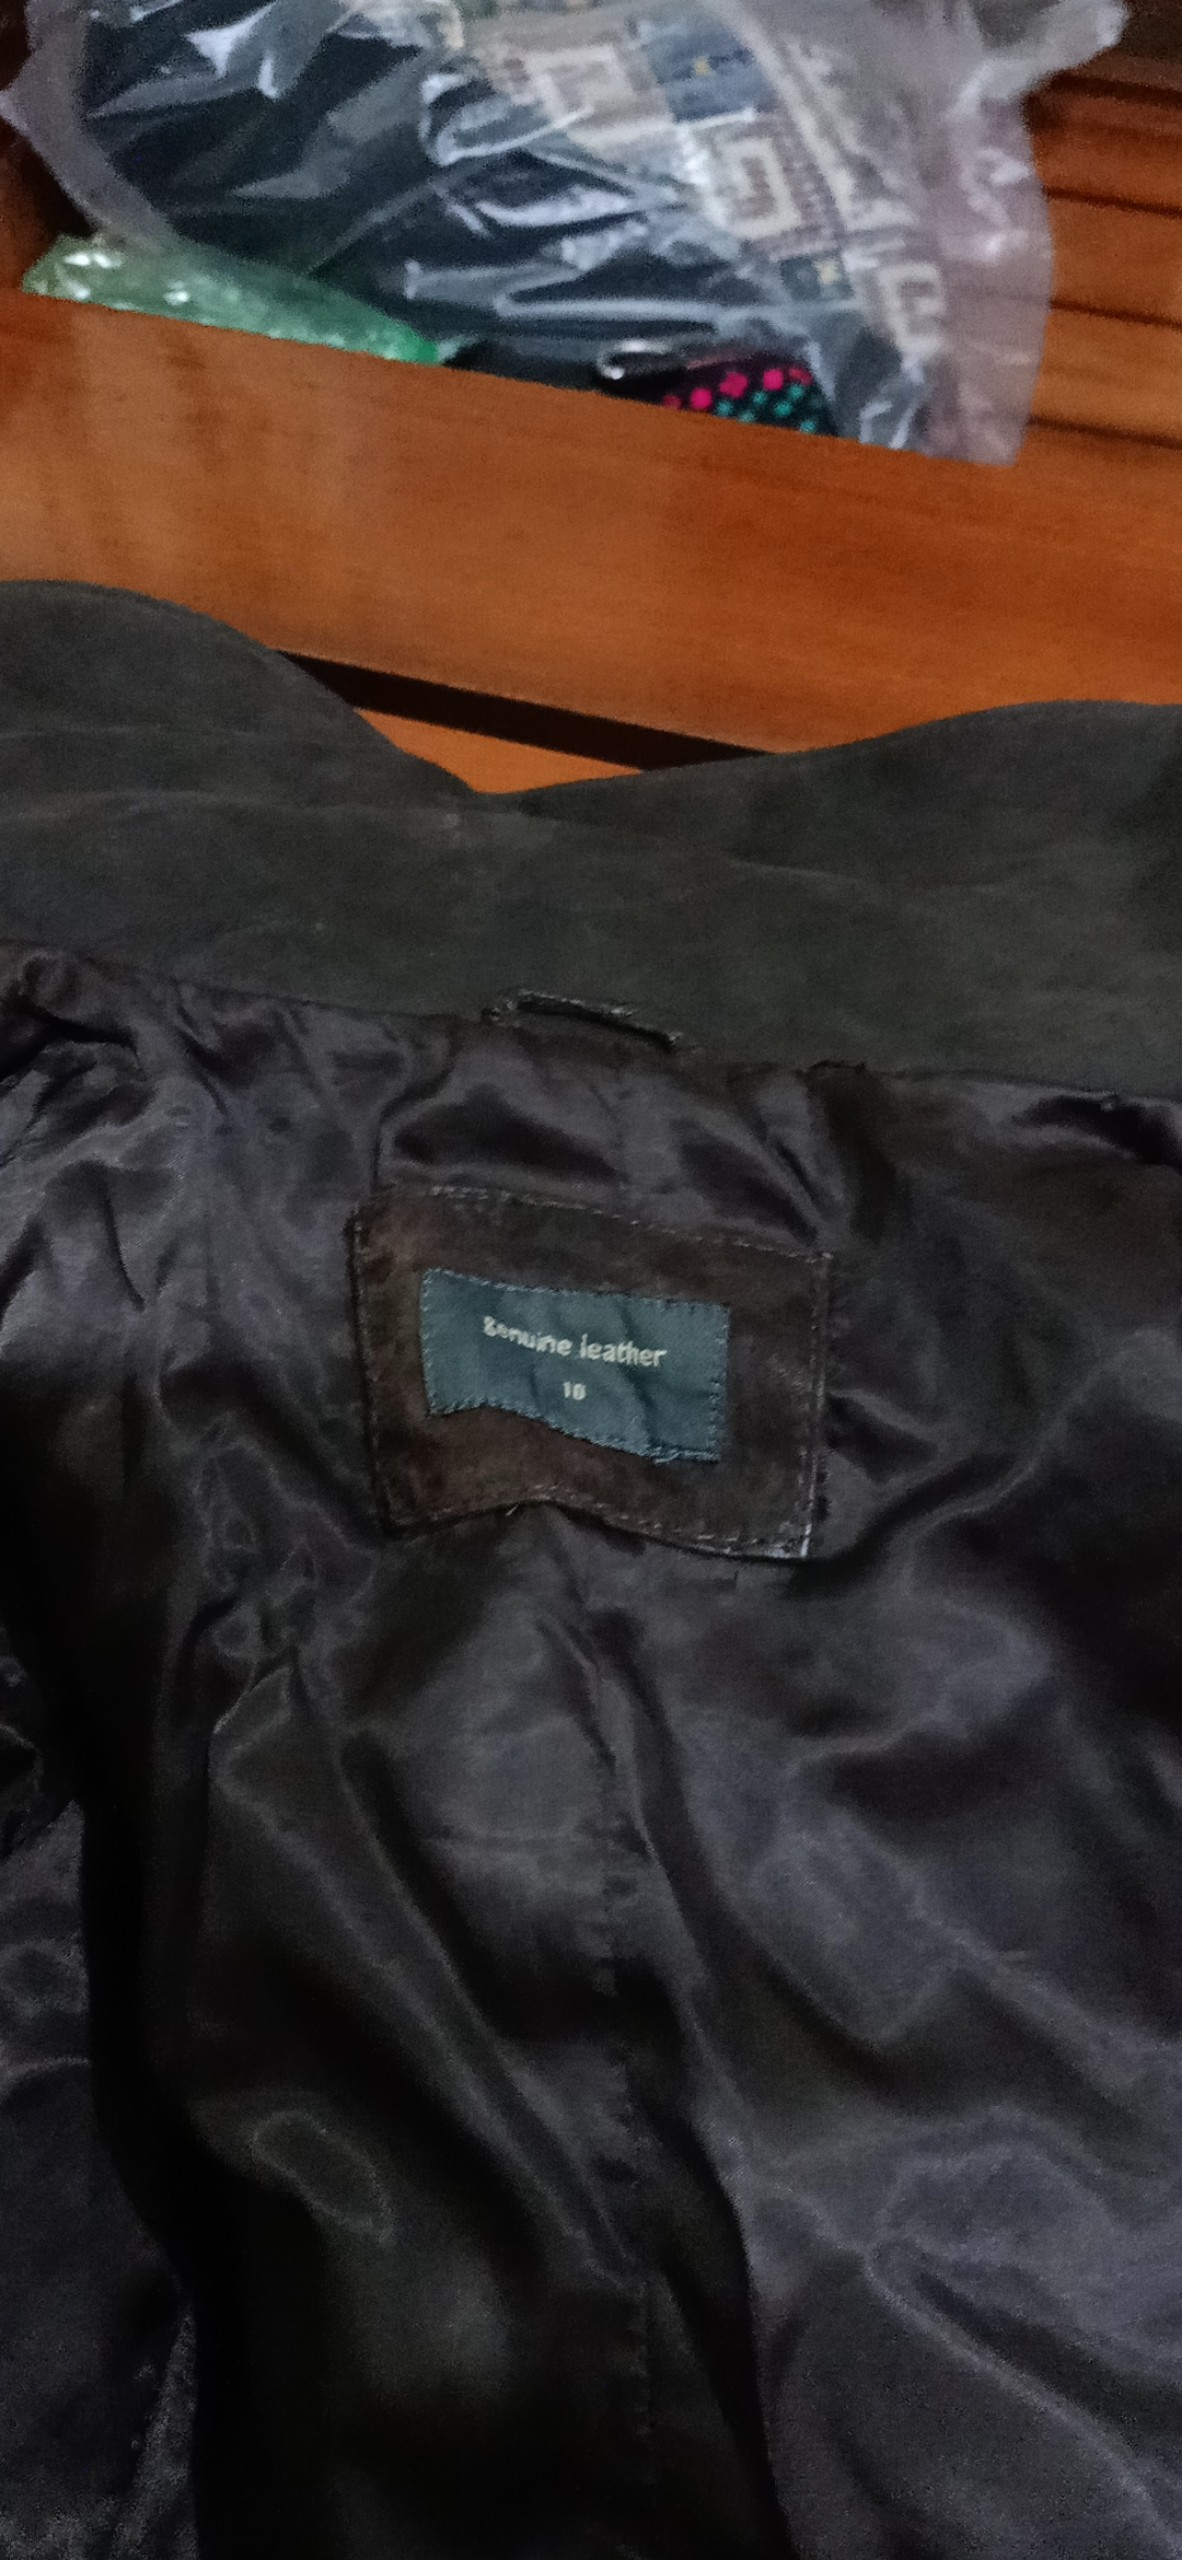 Suede jacket - repair